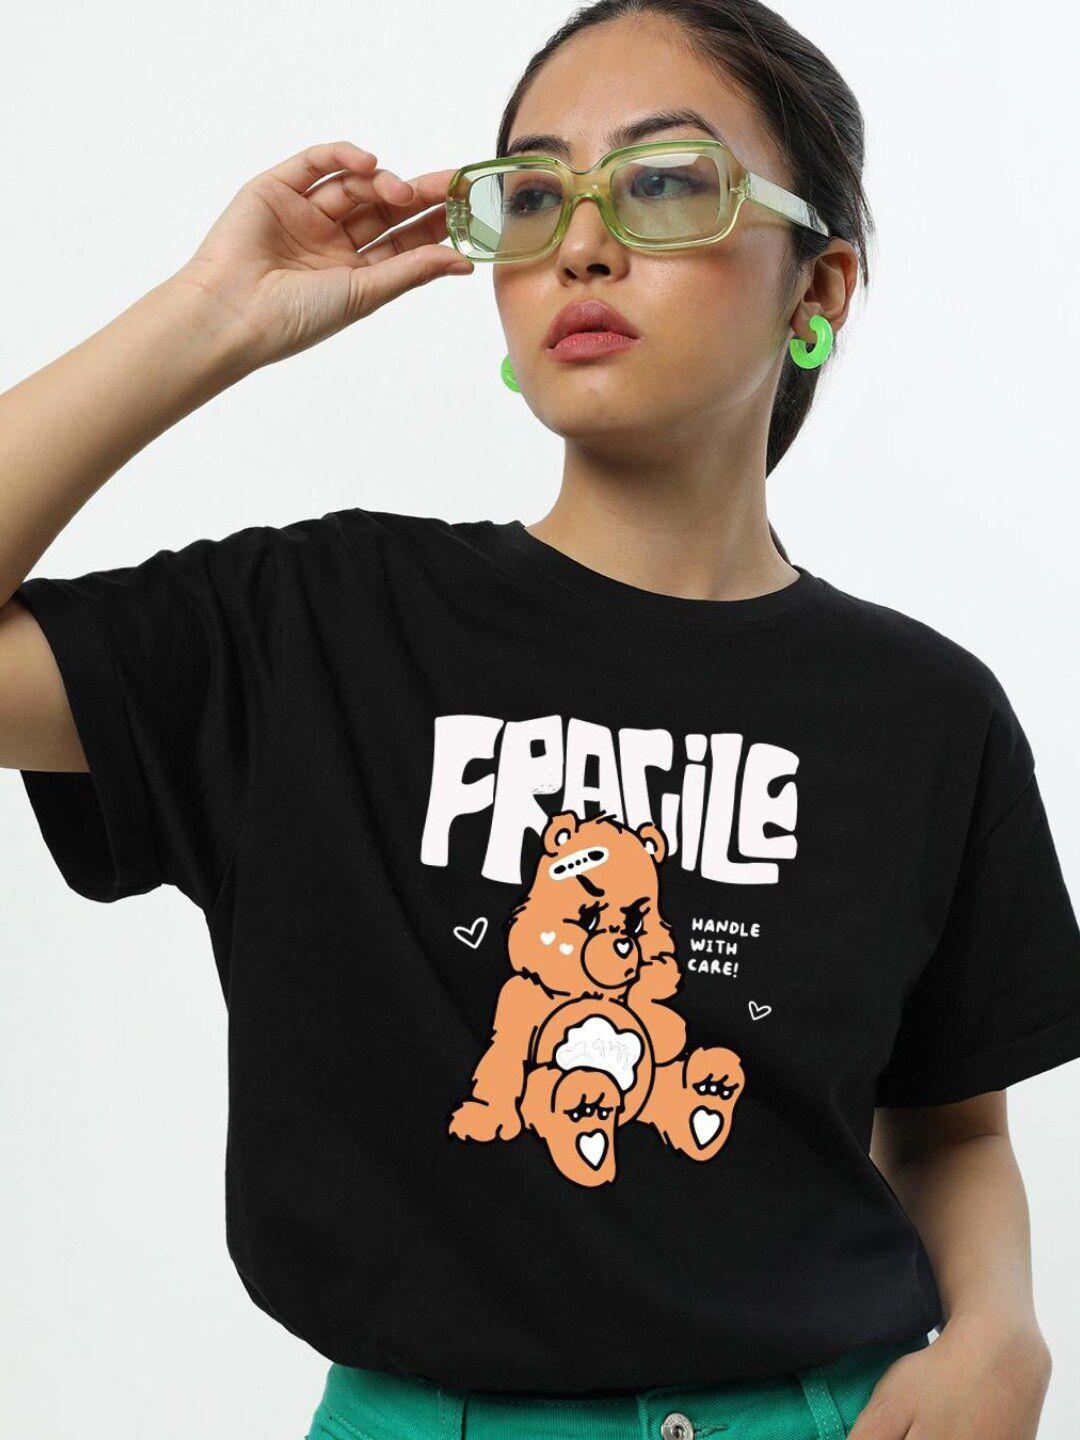 Bewakoof Fragile Graphic Printed Boyfriend T-shirt